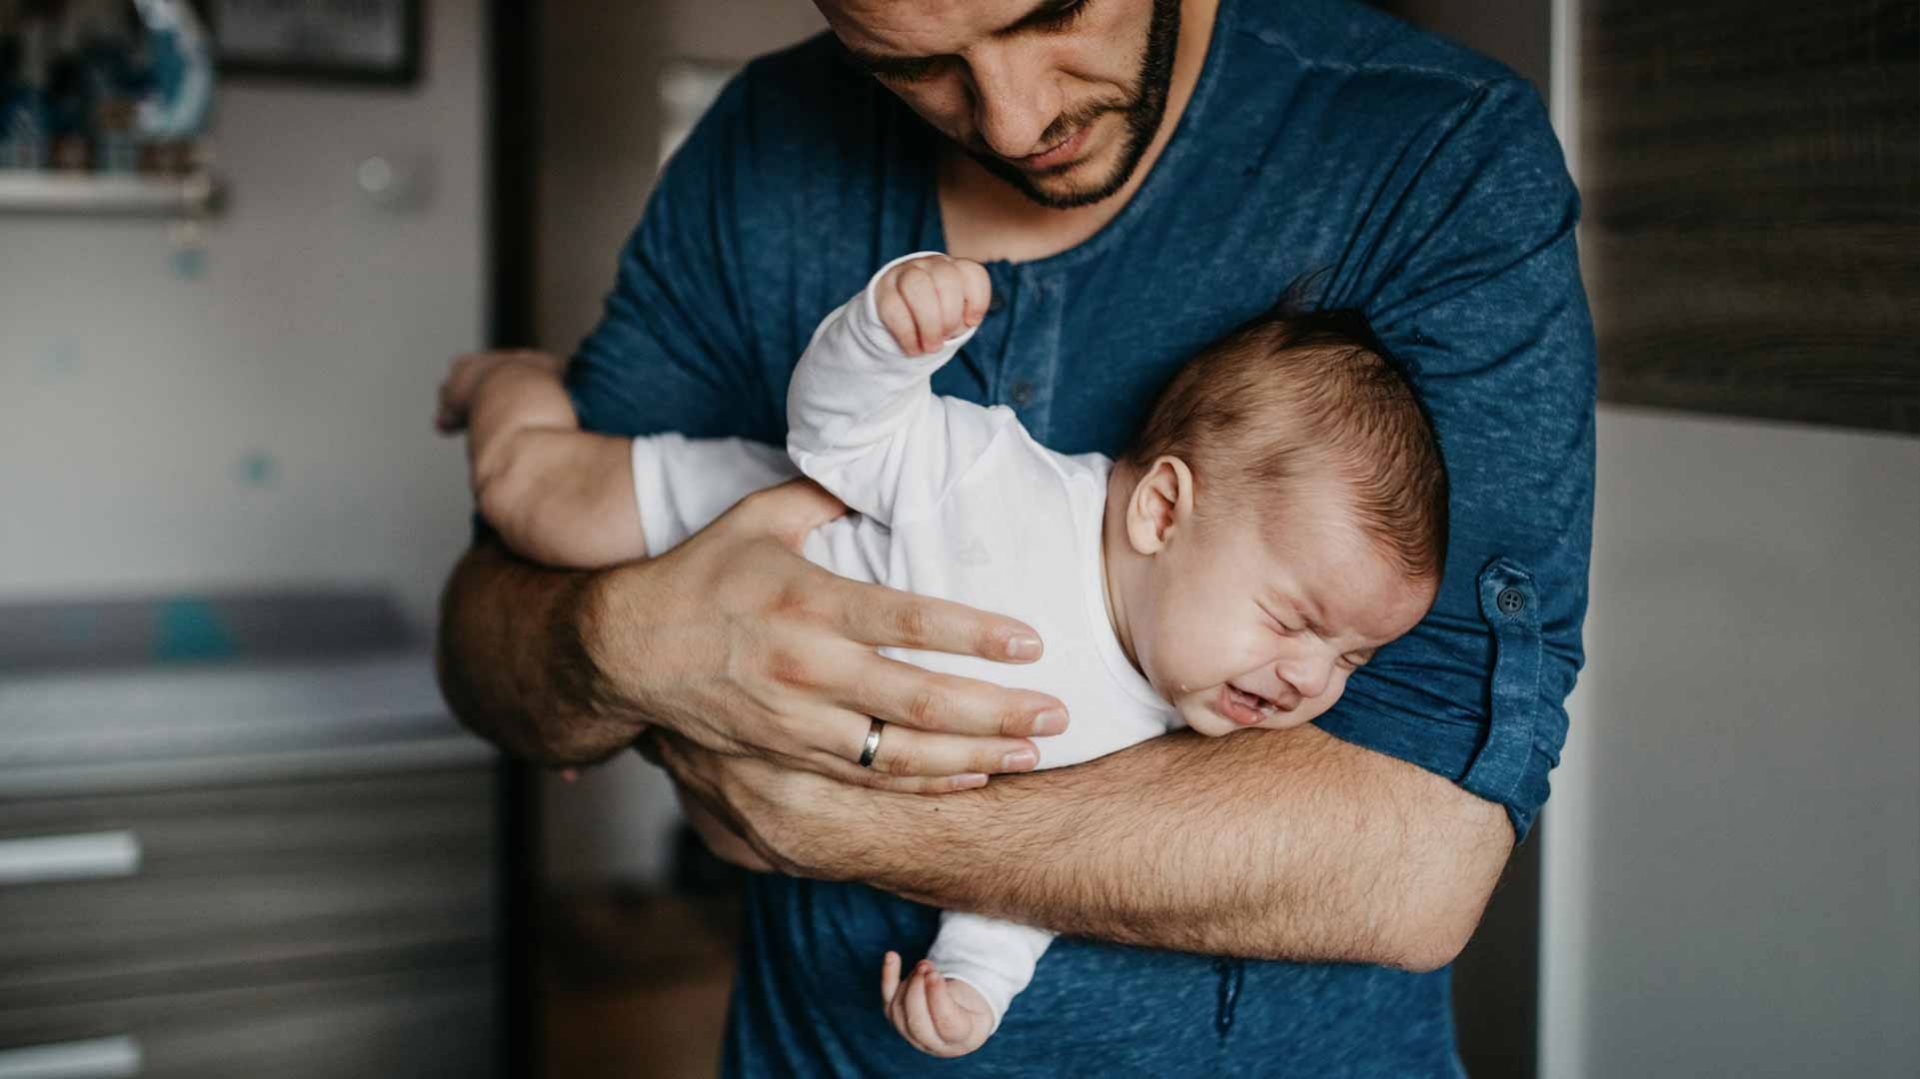 Imagem de um homem segurando o bebê em seus braços, o bebê esta de bruço e chorando.